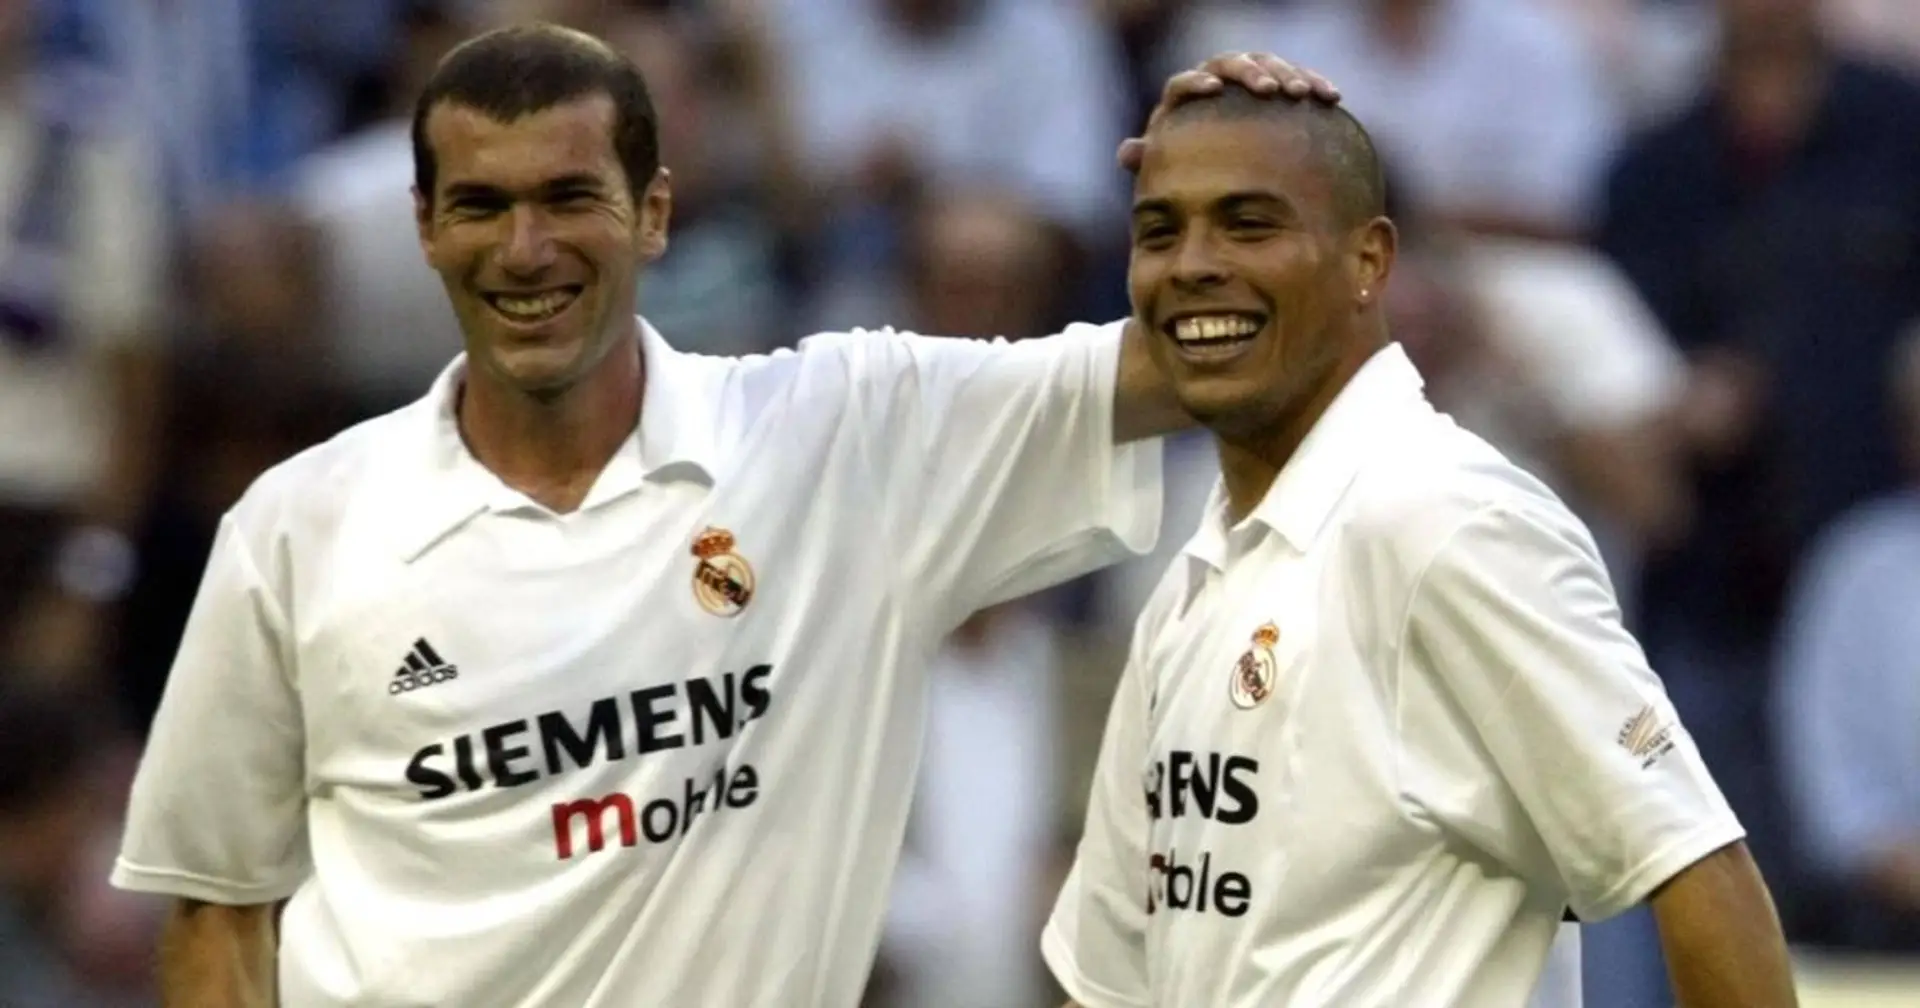 "Zidane le joueur ou Zidane l'entraîneur? Je ne peux pas répondre à ça": Ronaldo Nazario